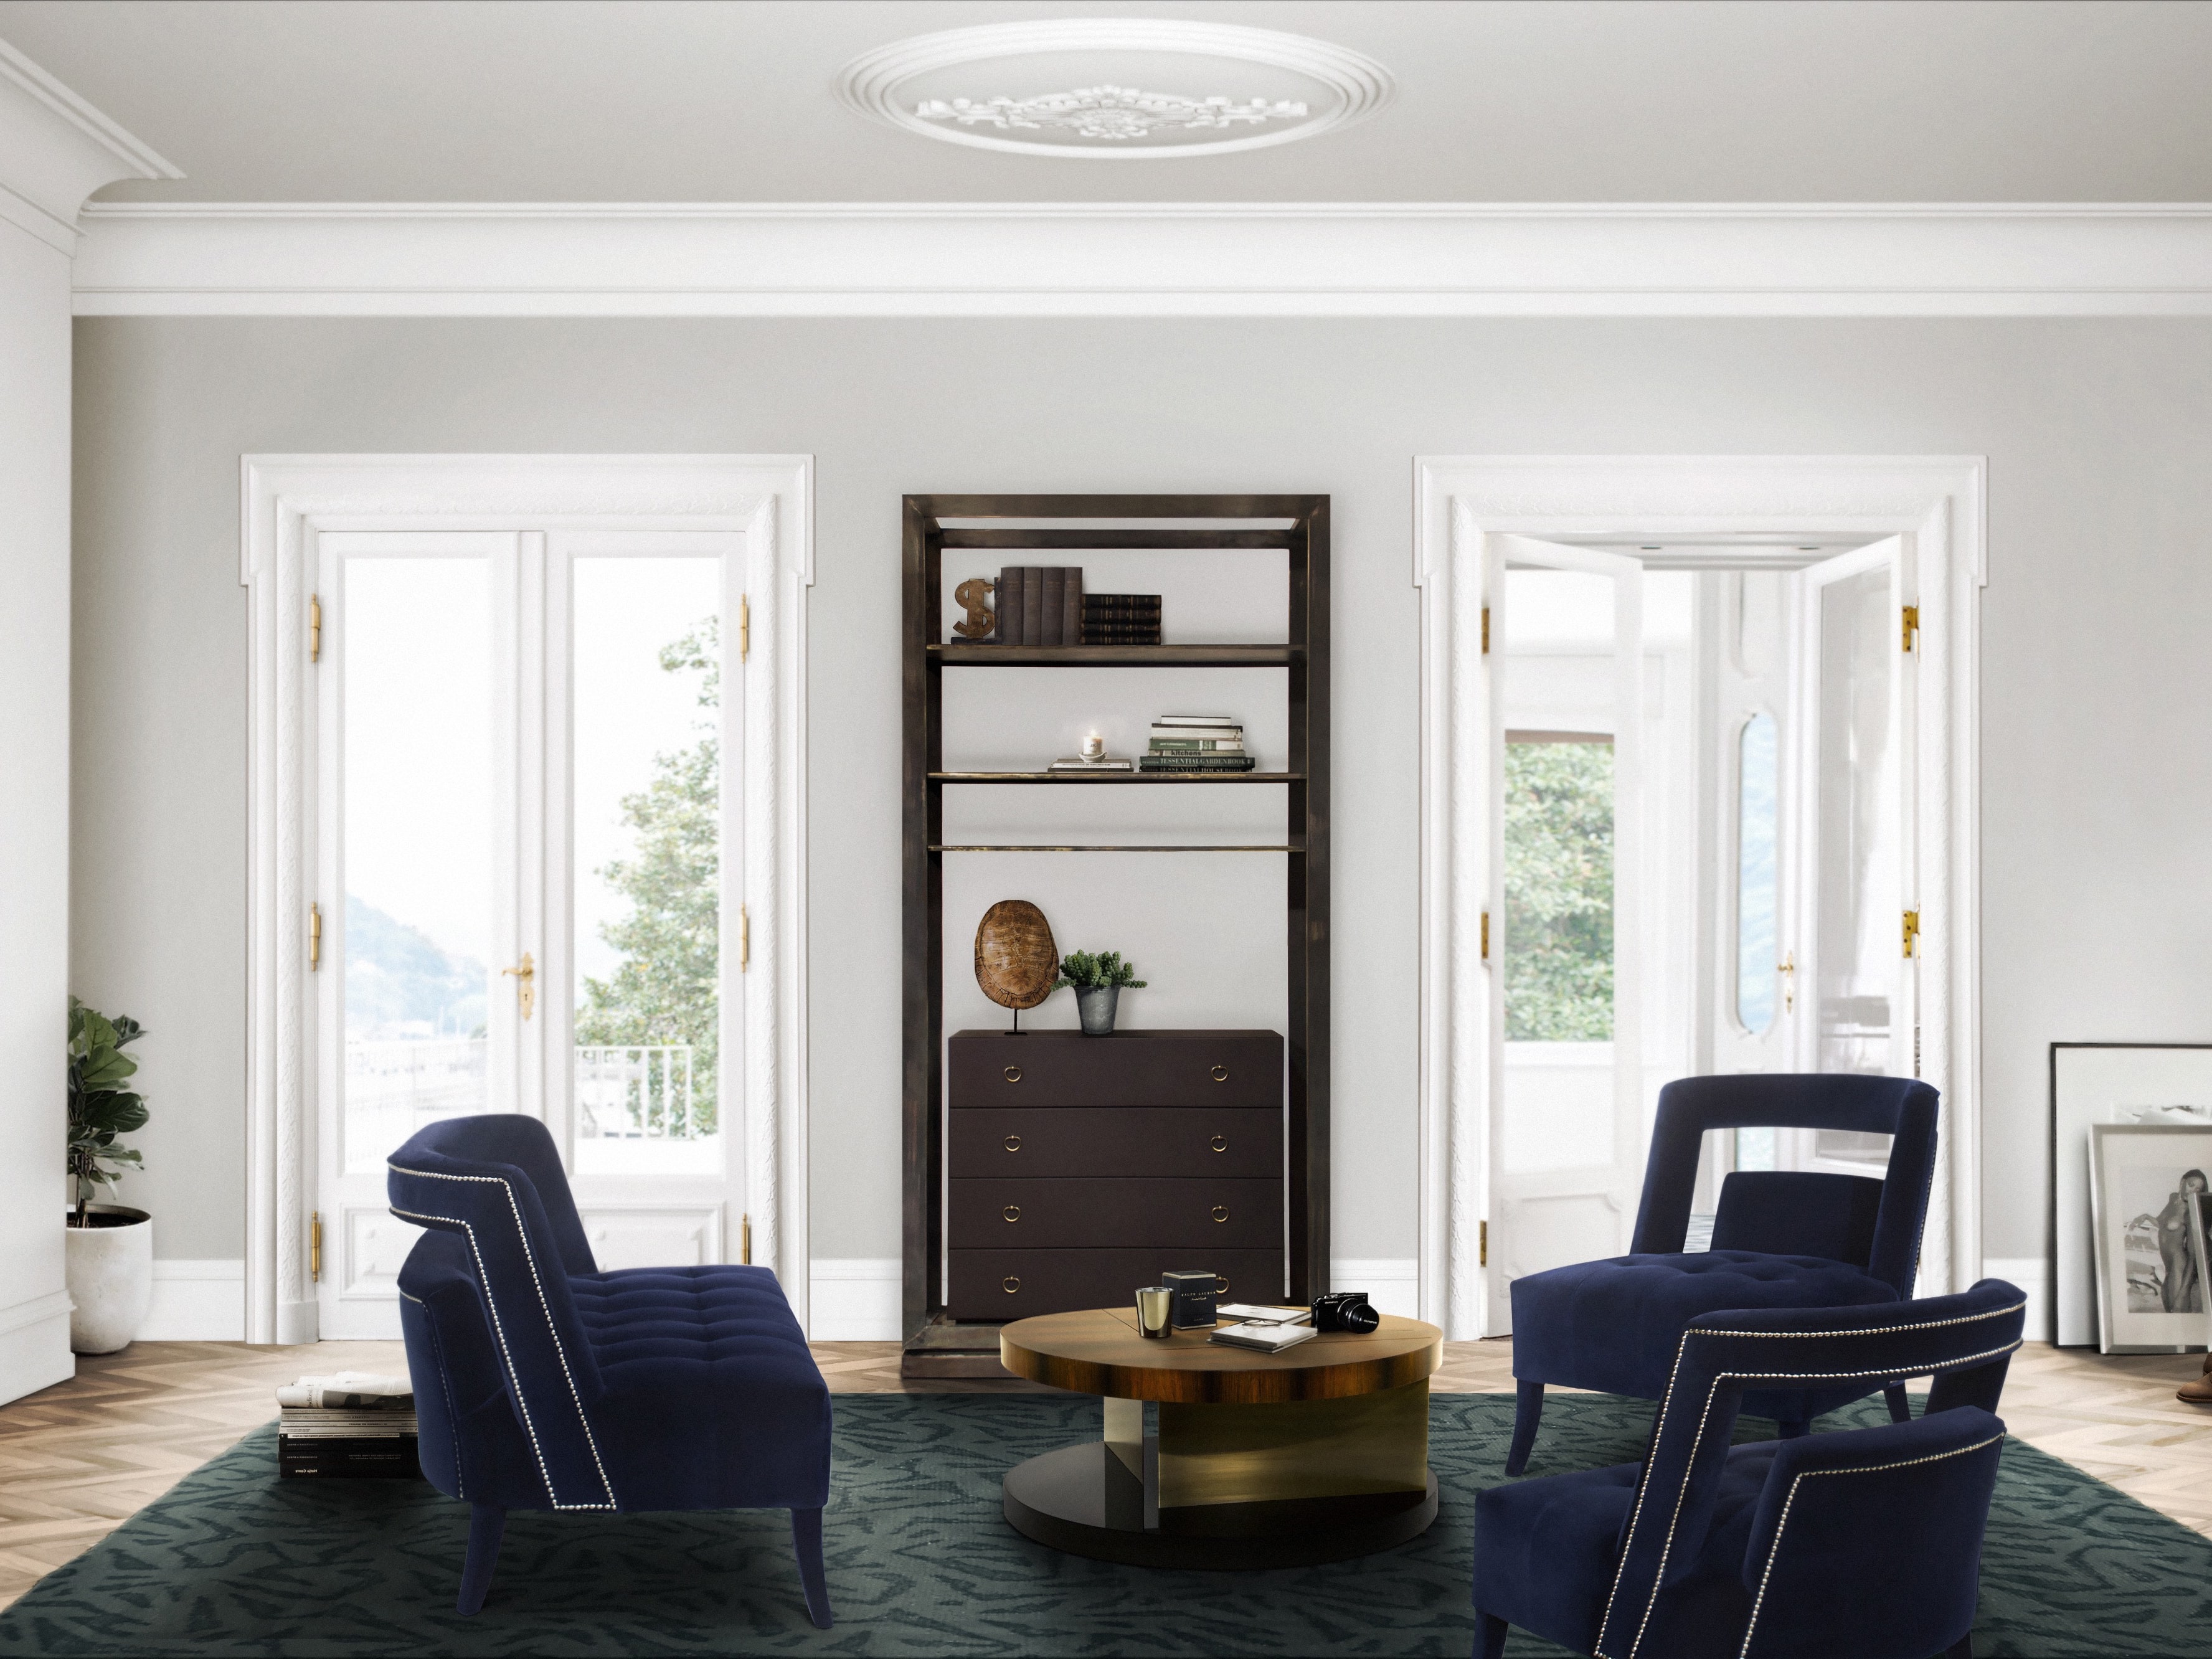 Nature-Inspired Modern Living Room Design with Fully Velvet Upholstered Armchair - Home'Society